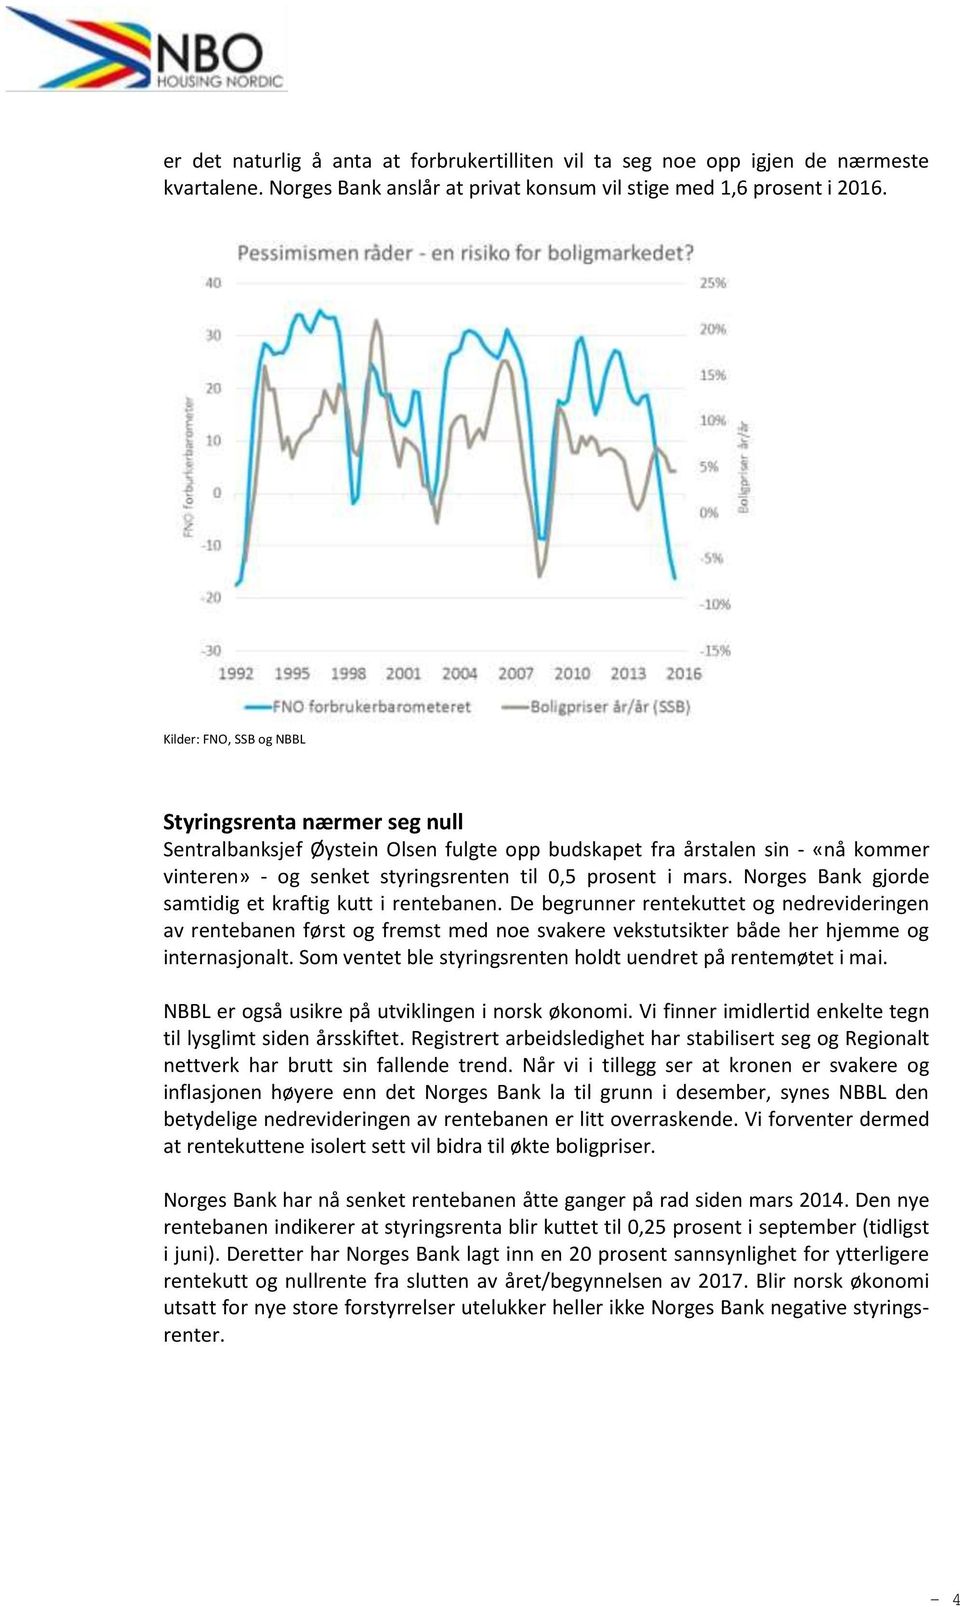 Norges Bank gjorde samtidig et kraftig kutt i rentebanen. De begrunner rentekuttet og nedrevideringen av rentebanen først og fremst med noe svakere vekstutsikter både her hjemme og internasjonalt.